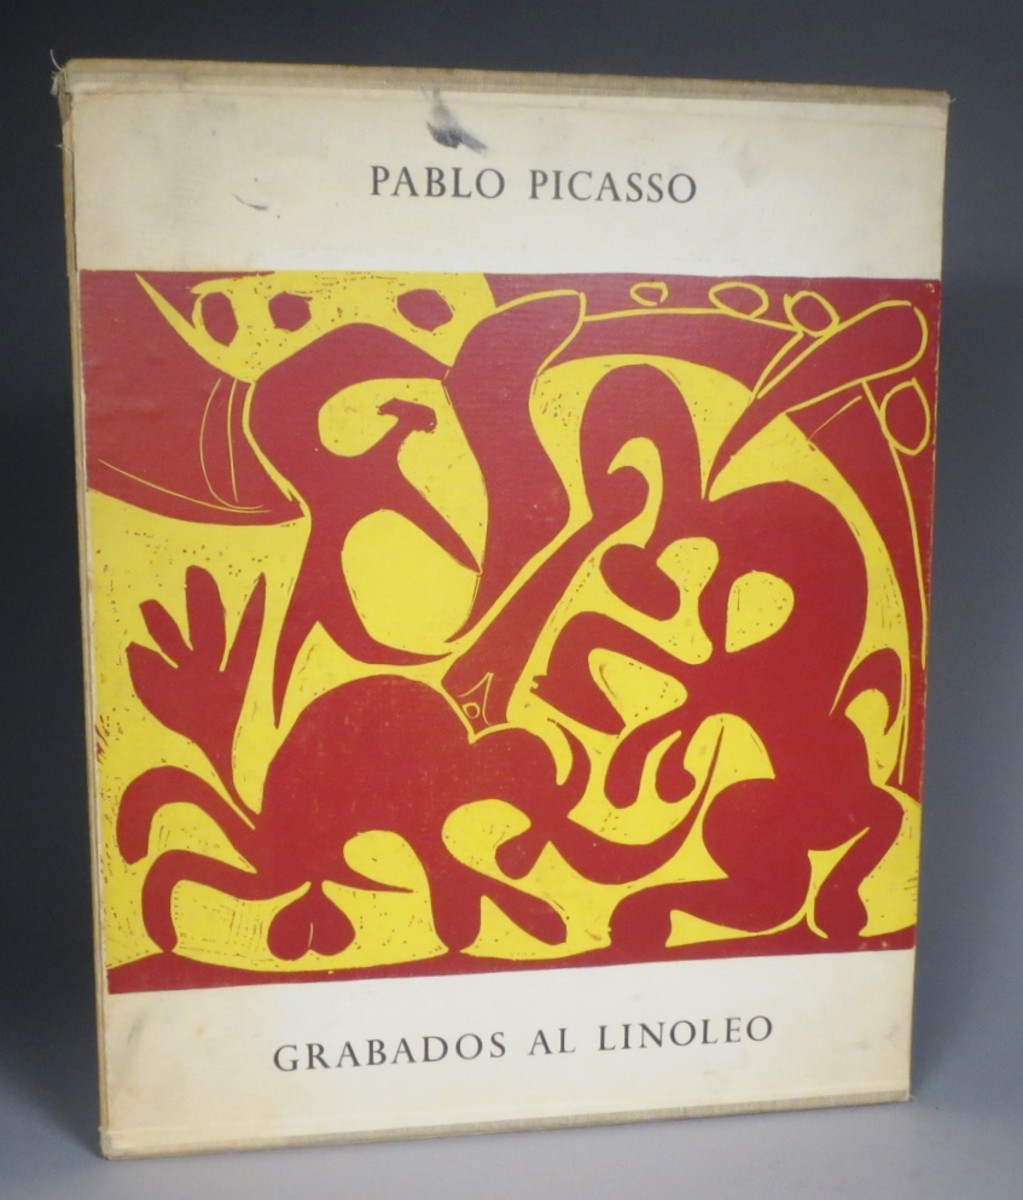 Pablo Picasso book